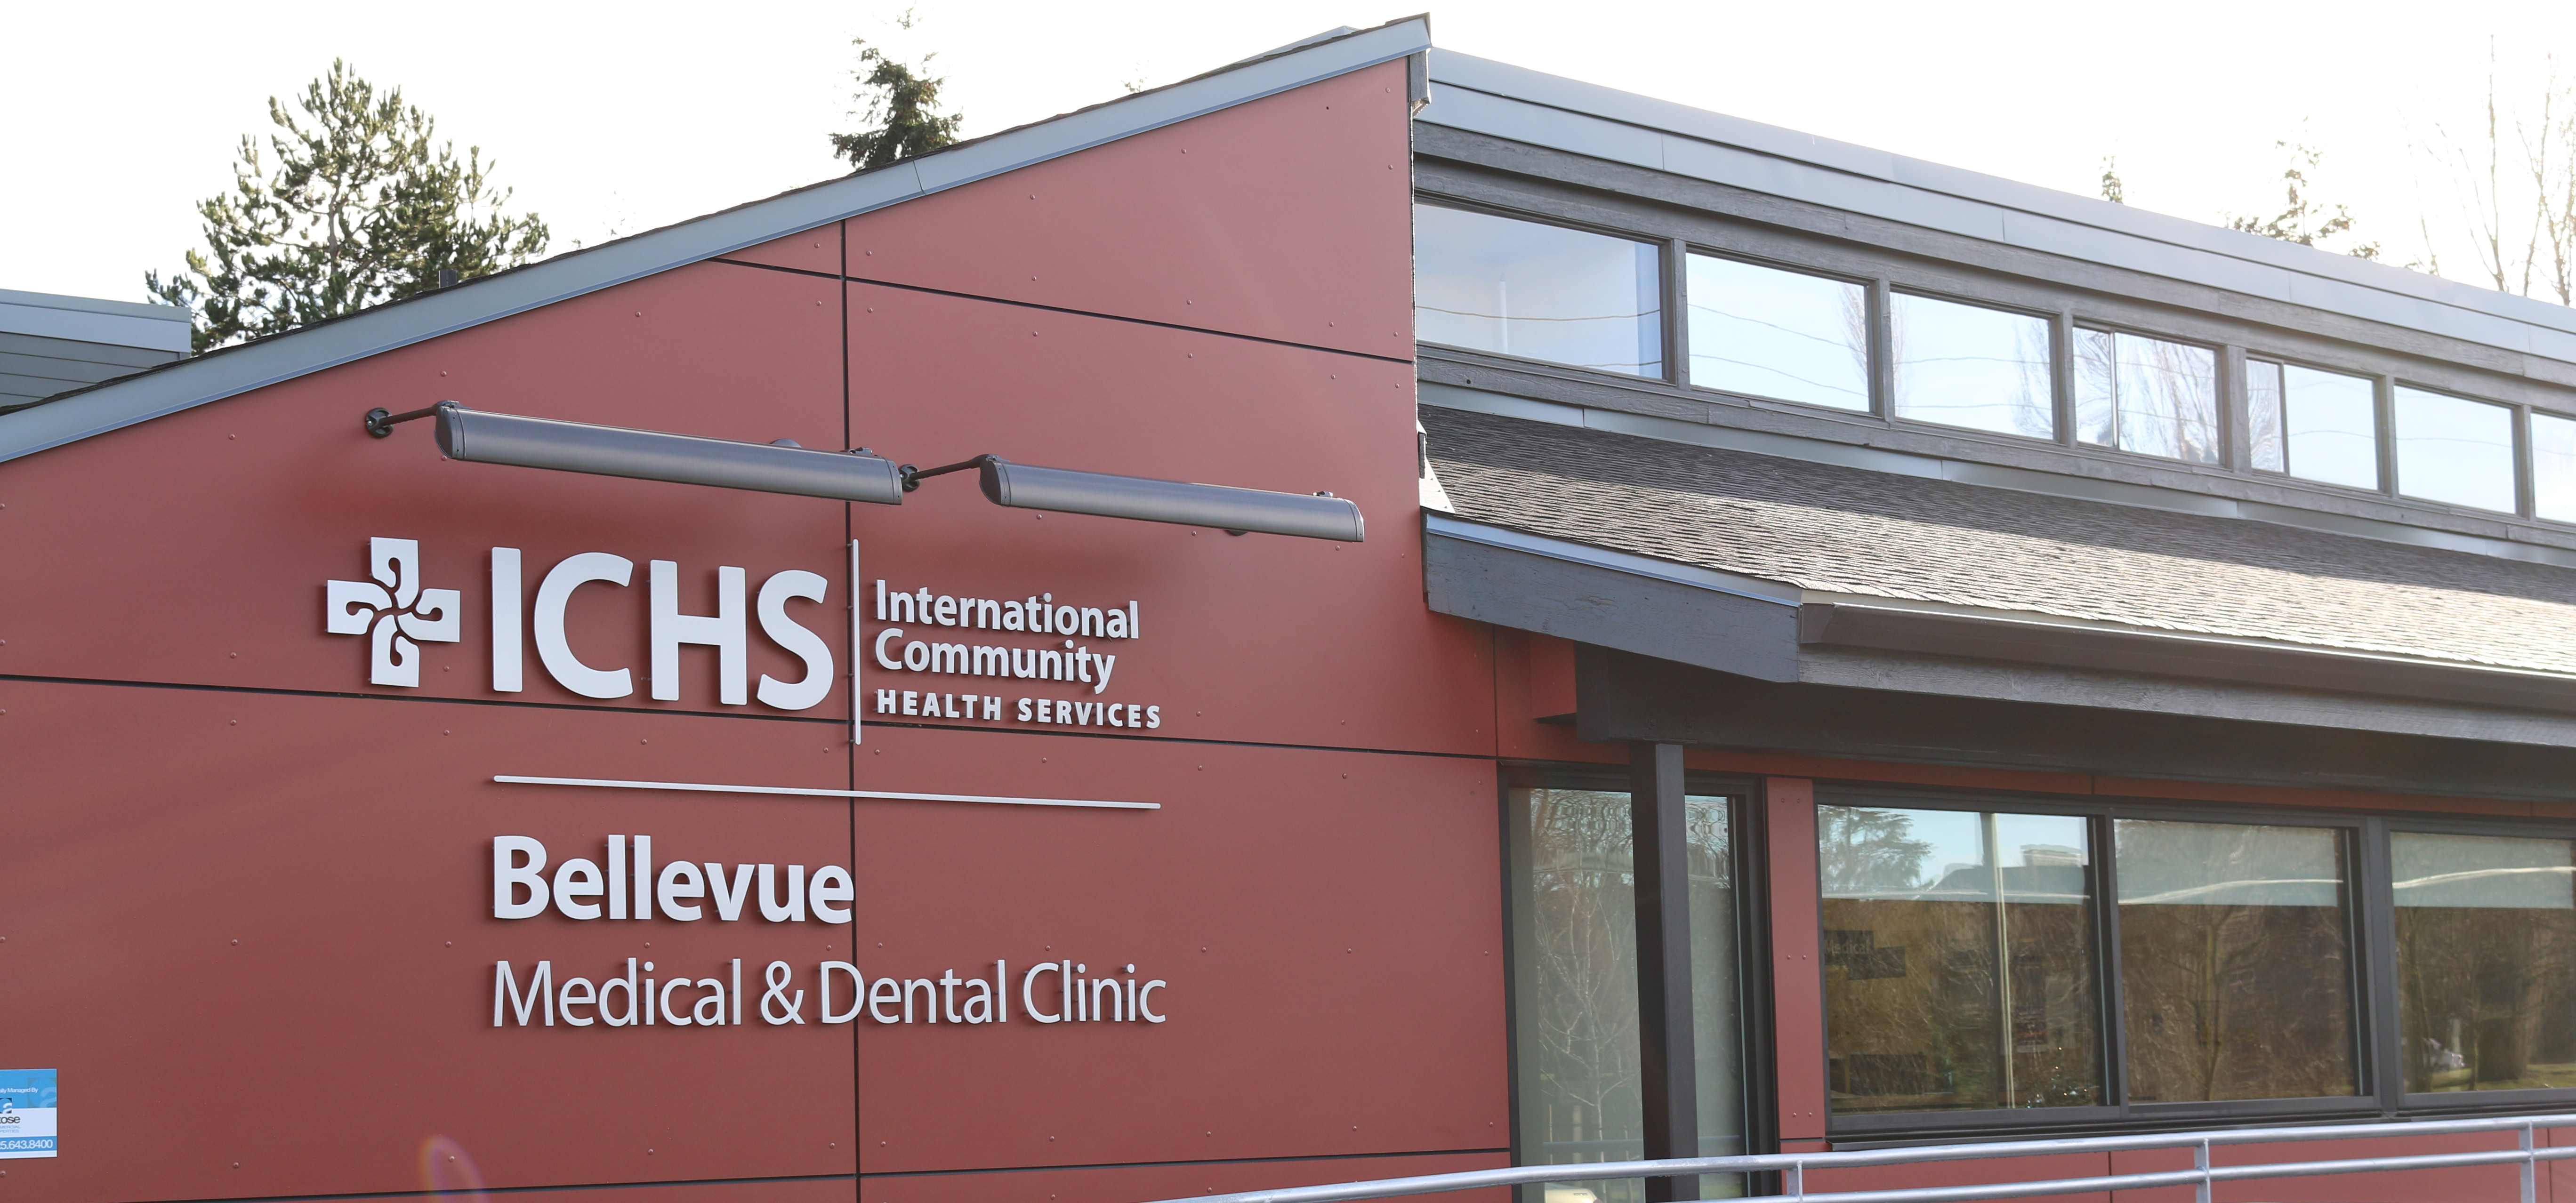 ¿Qué es International Community Health Services (ICHS)?